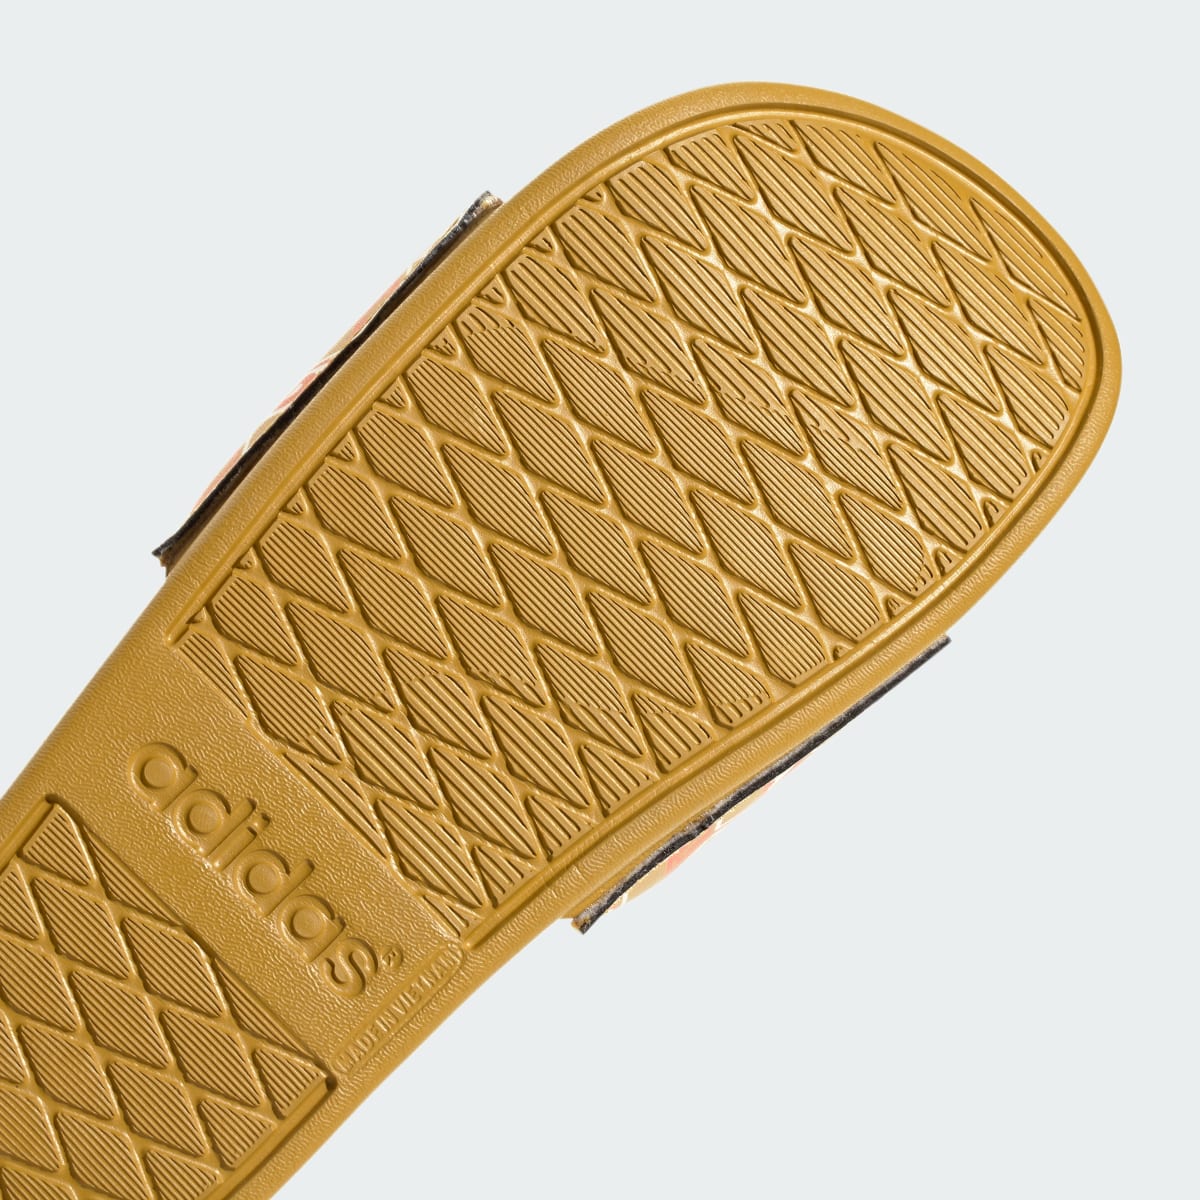 Adidas Sandali adilette Comfort. 9